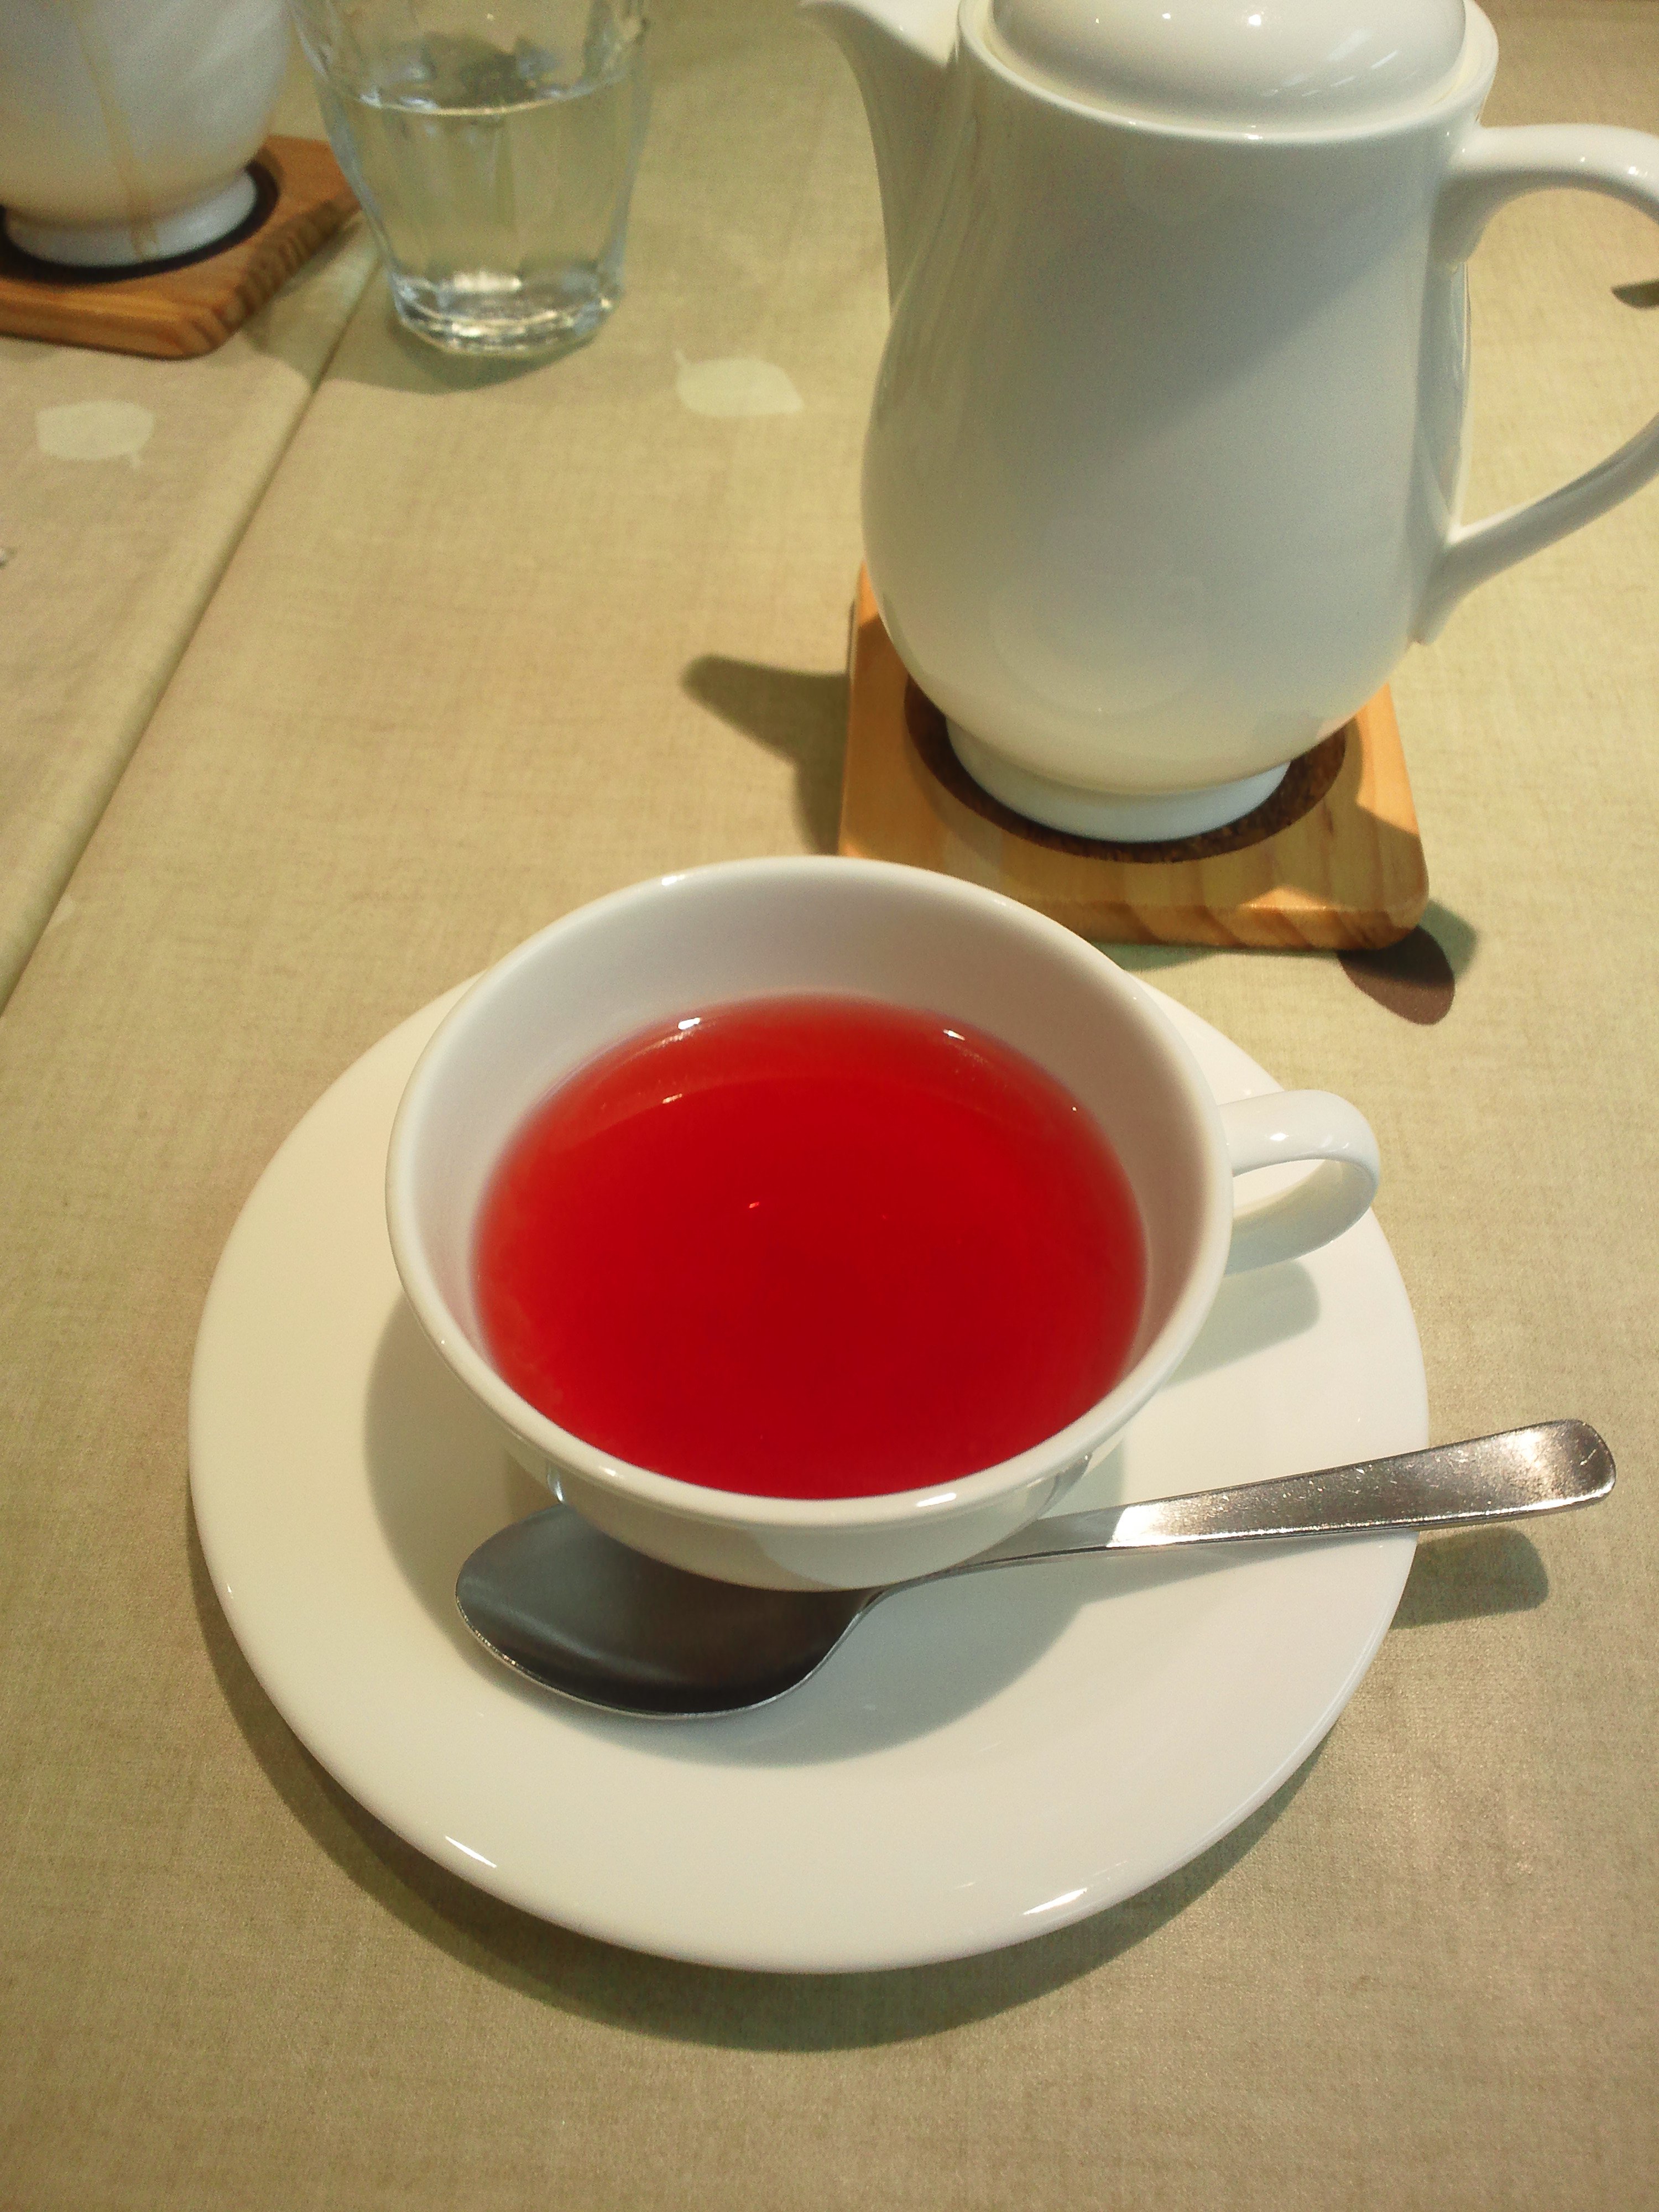 よしぞうmaro 打ち合わせついでに初めてローズヒップを注文してみる 確かに赤い紅茶で酸味が特徴的 Garupan T Co Jo0yobq61p Twitter